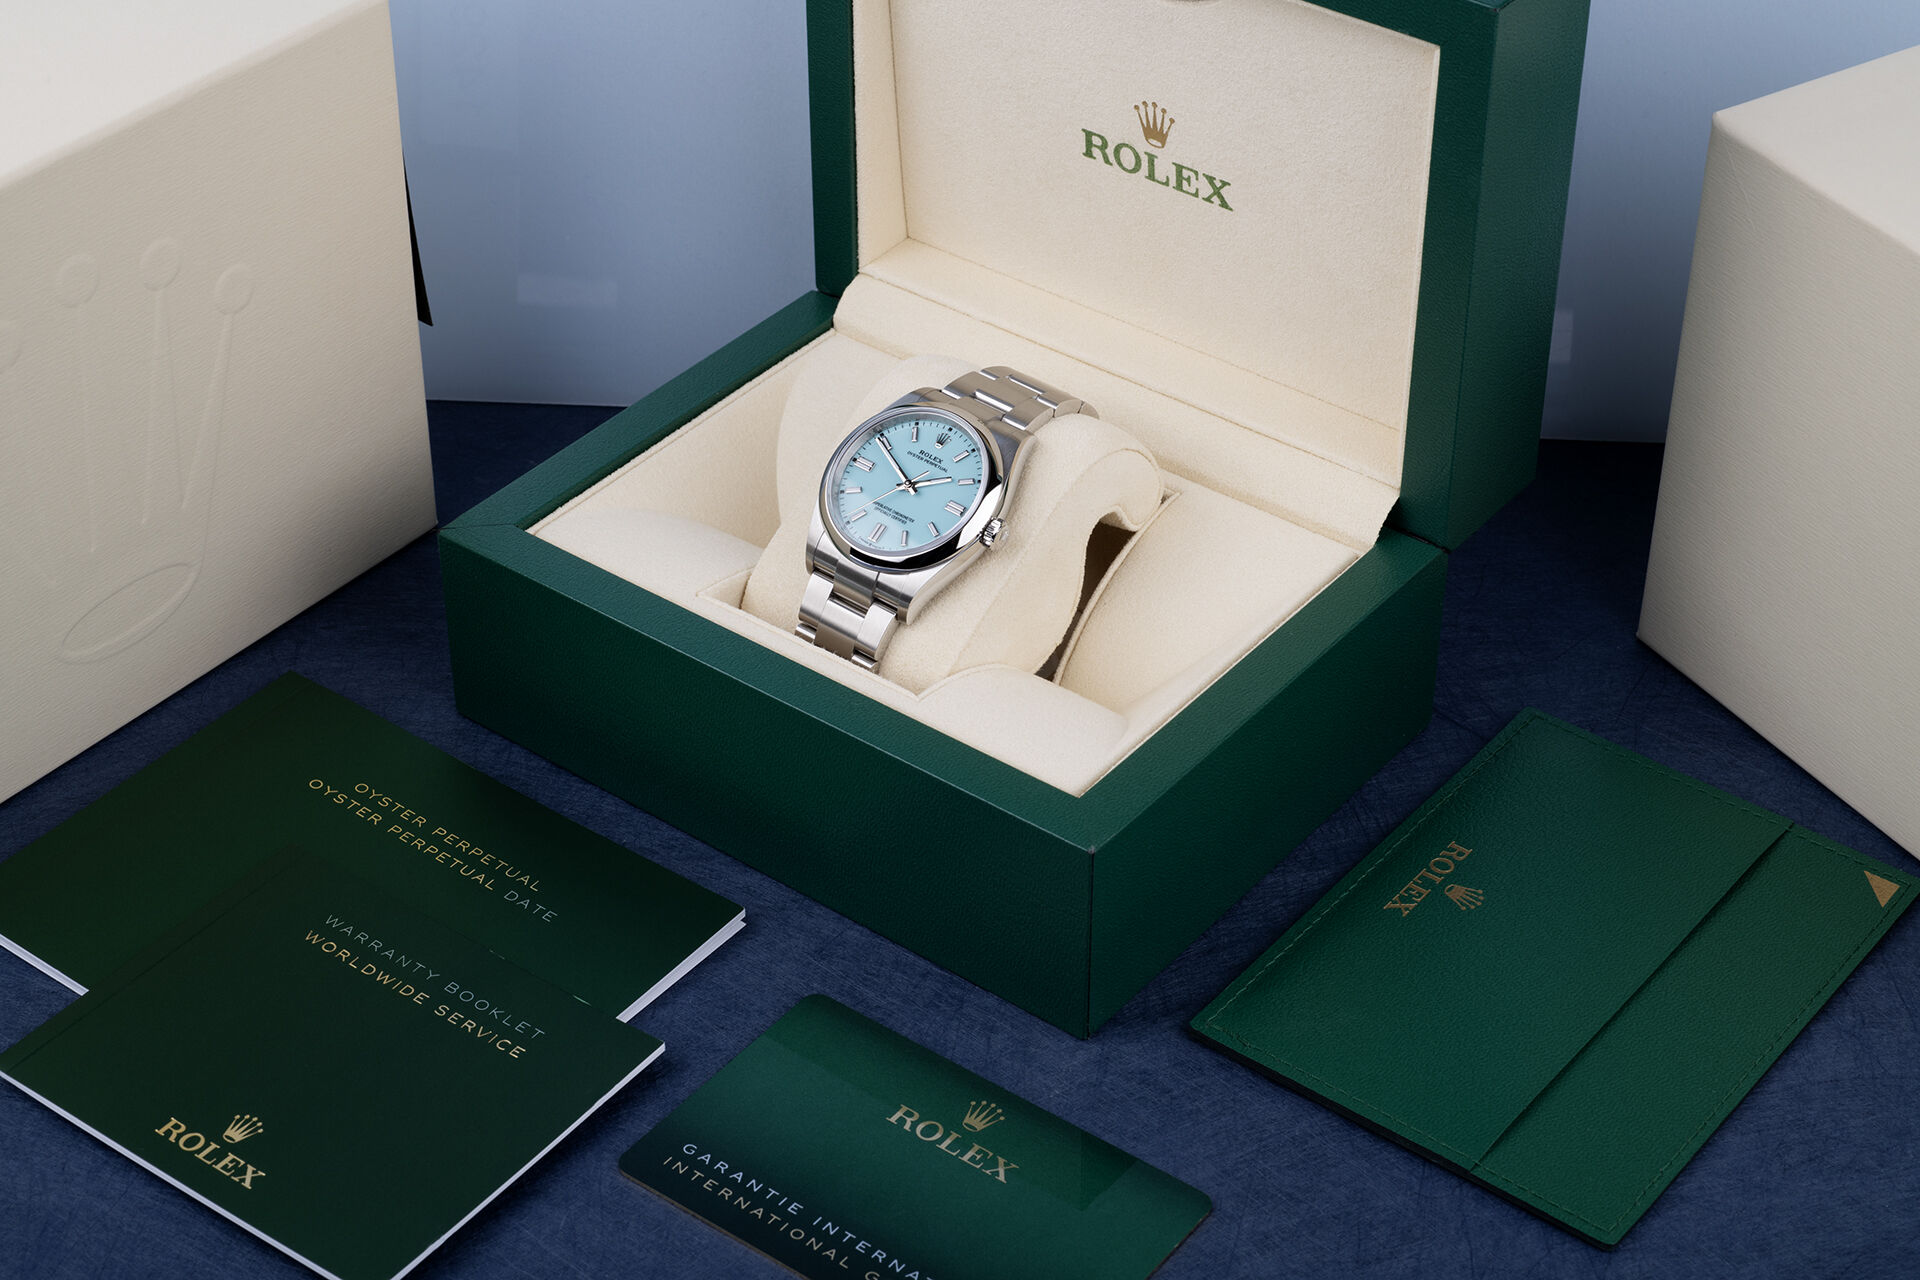 ref 126000 | 'Tiffany Blue' | Rolex Oyster Perpetual 36